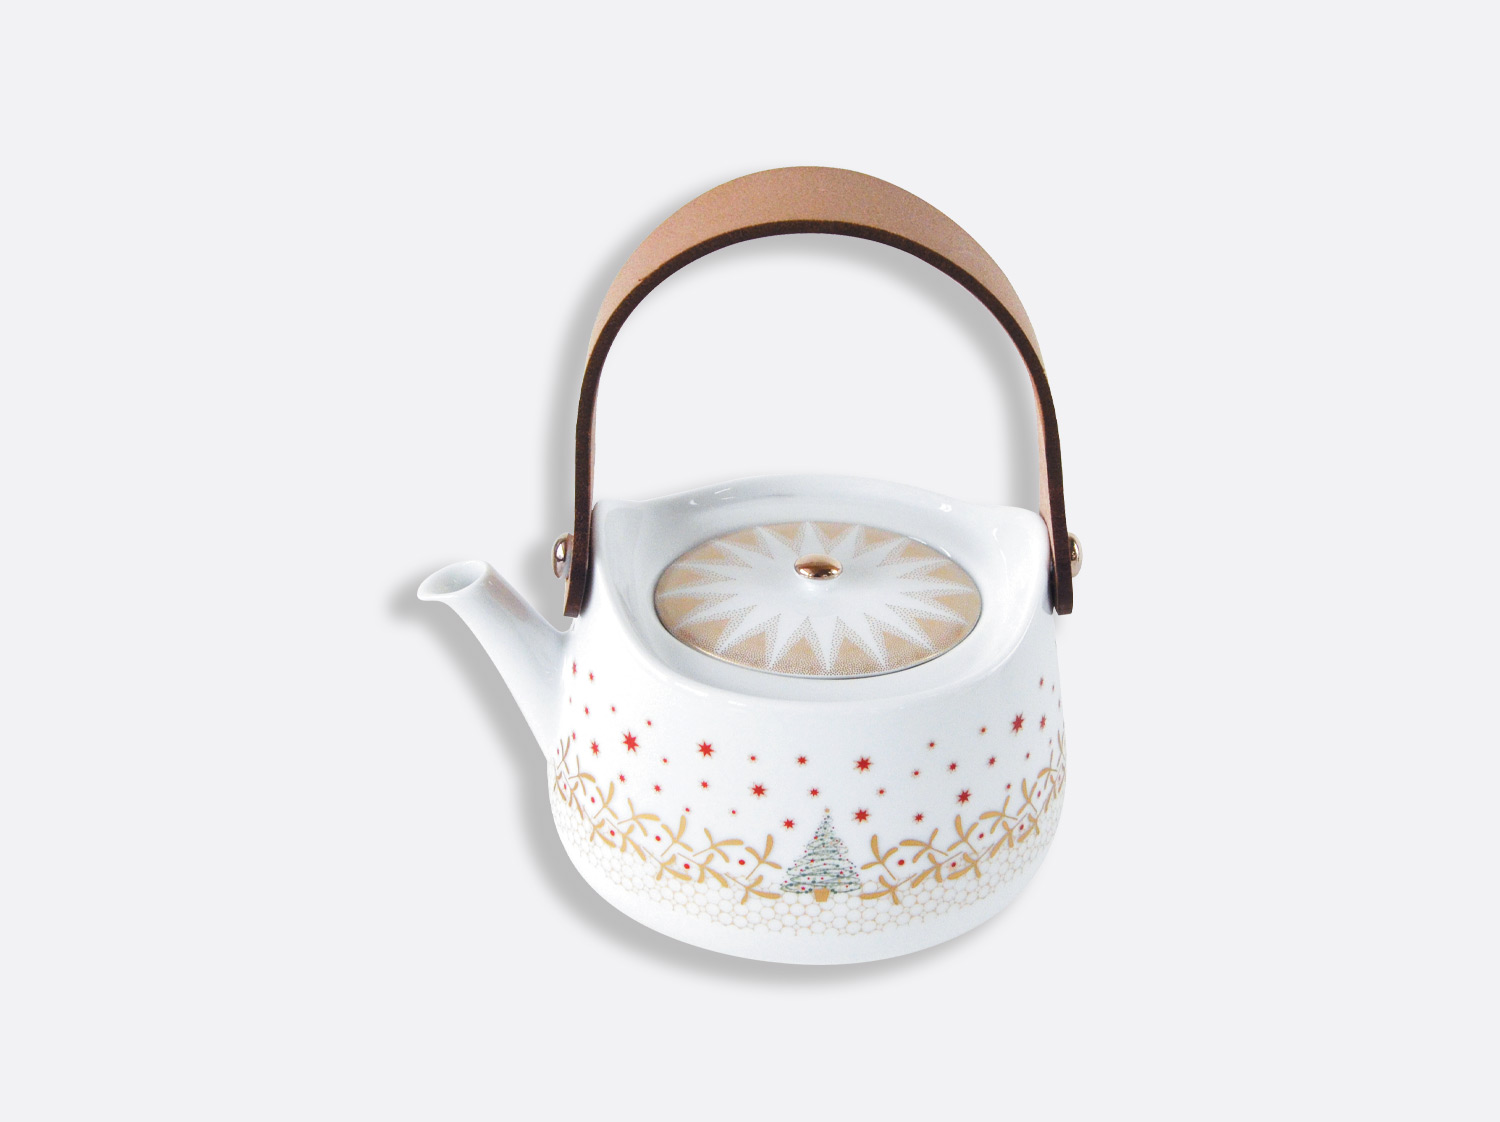 Porcelain Teapot, Ceramic Tea Pot w/ Removable Lid, Beverage